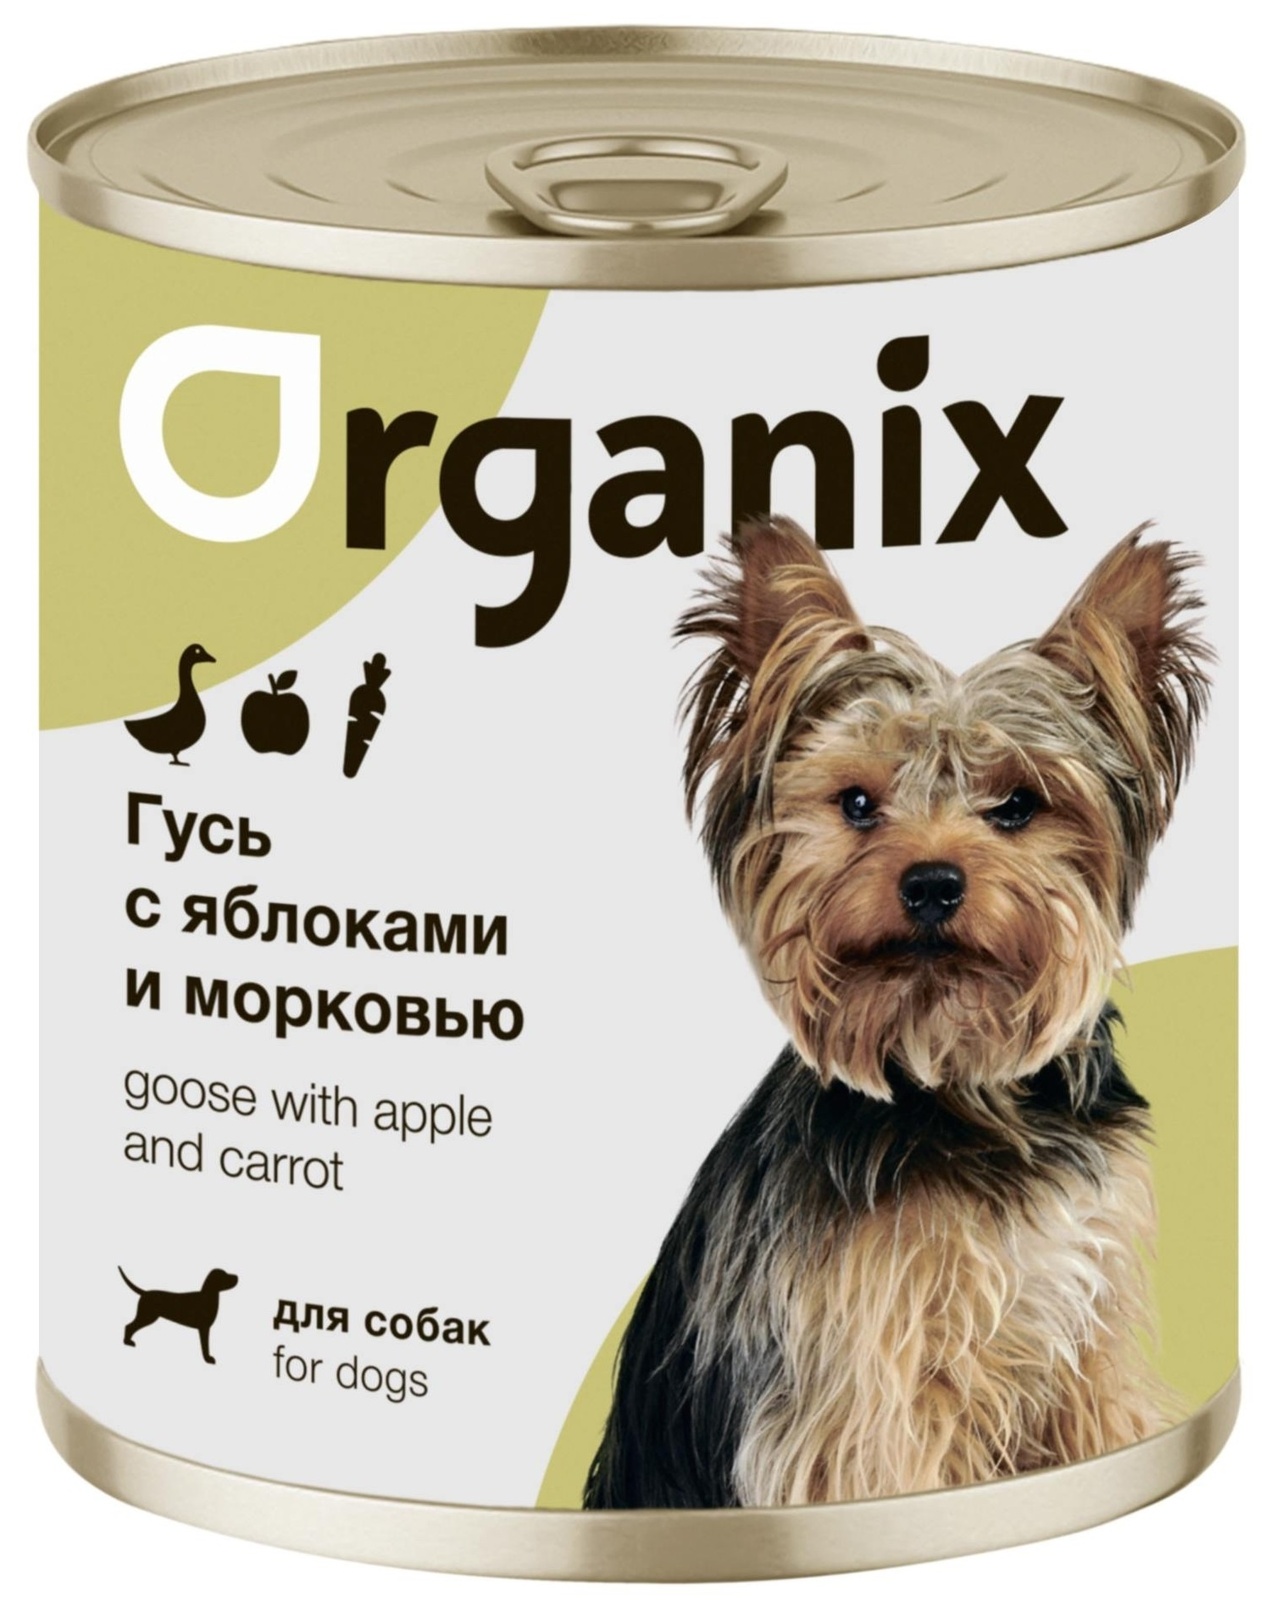 Organix консервы Organix консервы для собак Фрикасе из гуся с яблоками и морковкой (750 г) organix консервы organix консервы для собак телятина с зеленой фасолью 750 г